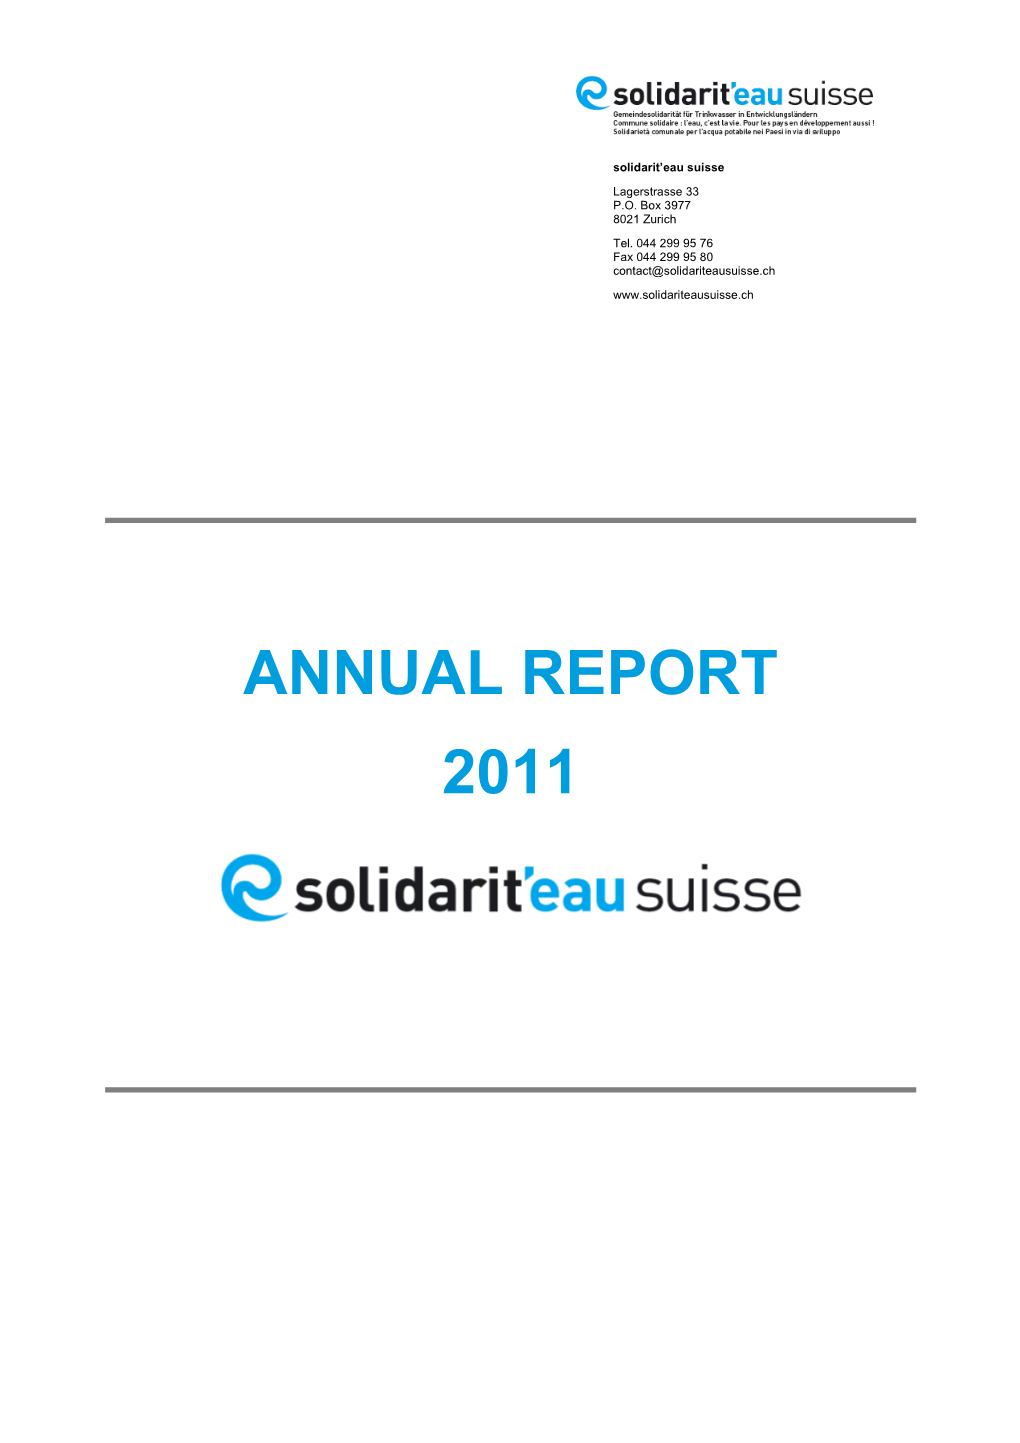 ANNUAL REPORT 2011 Annual Report 2011 2